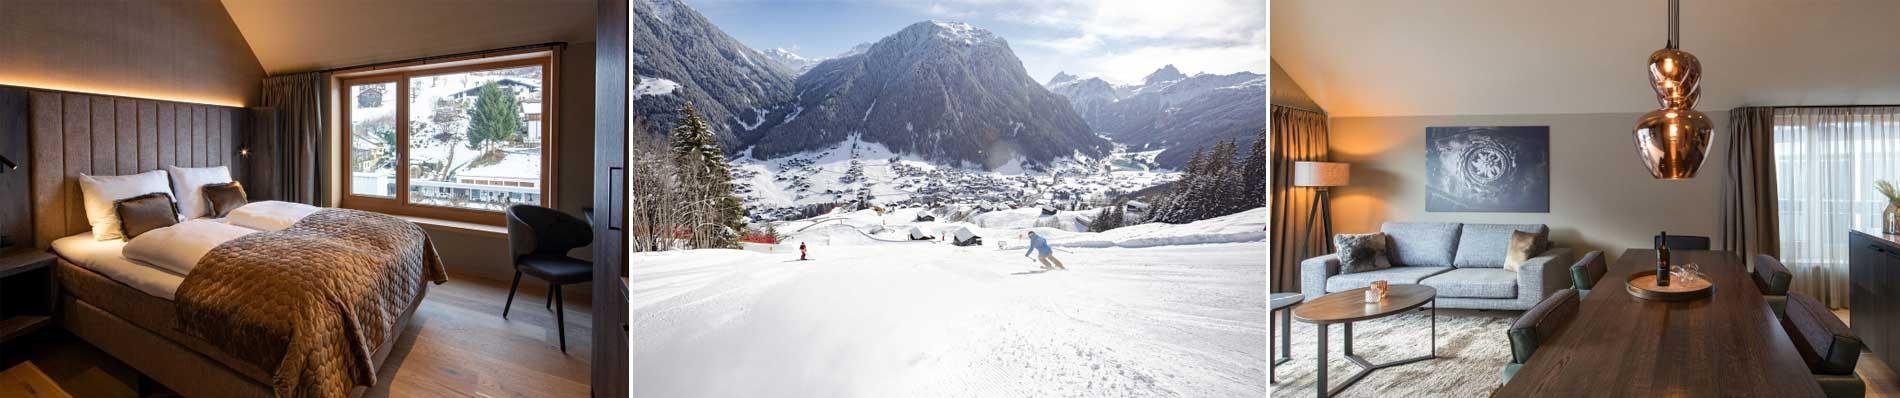 OASIS-RESORTS Pure Oostenrijk ski wintersport